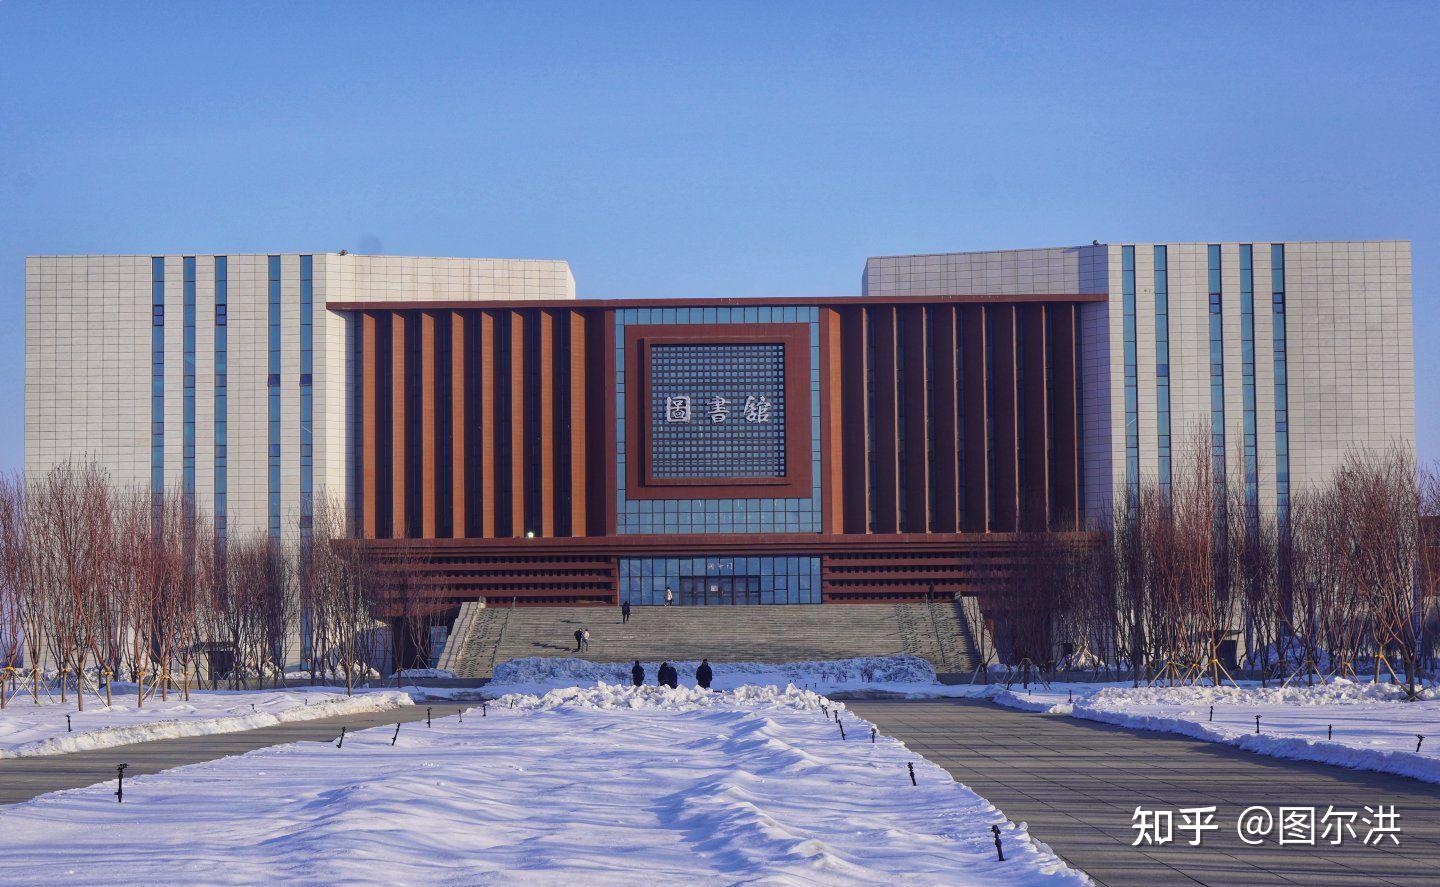 新疆大学校园环境好吗? 